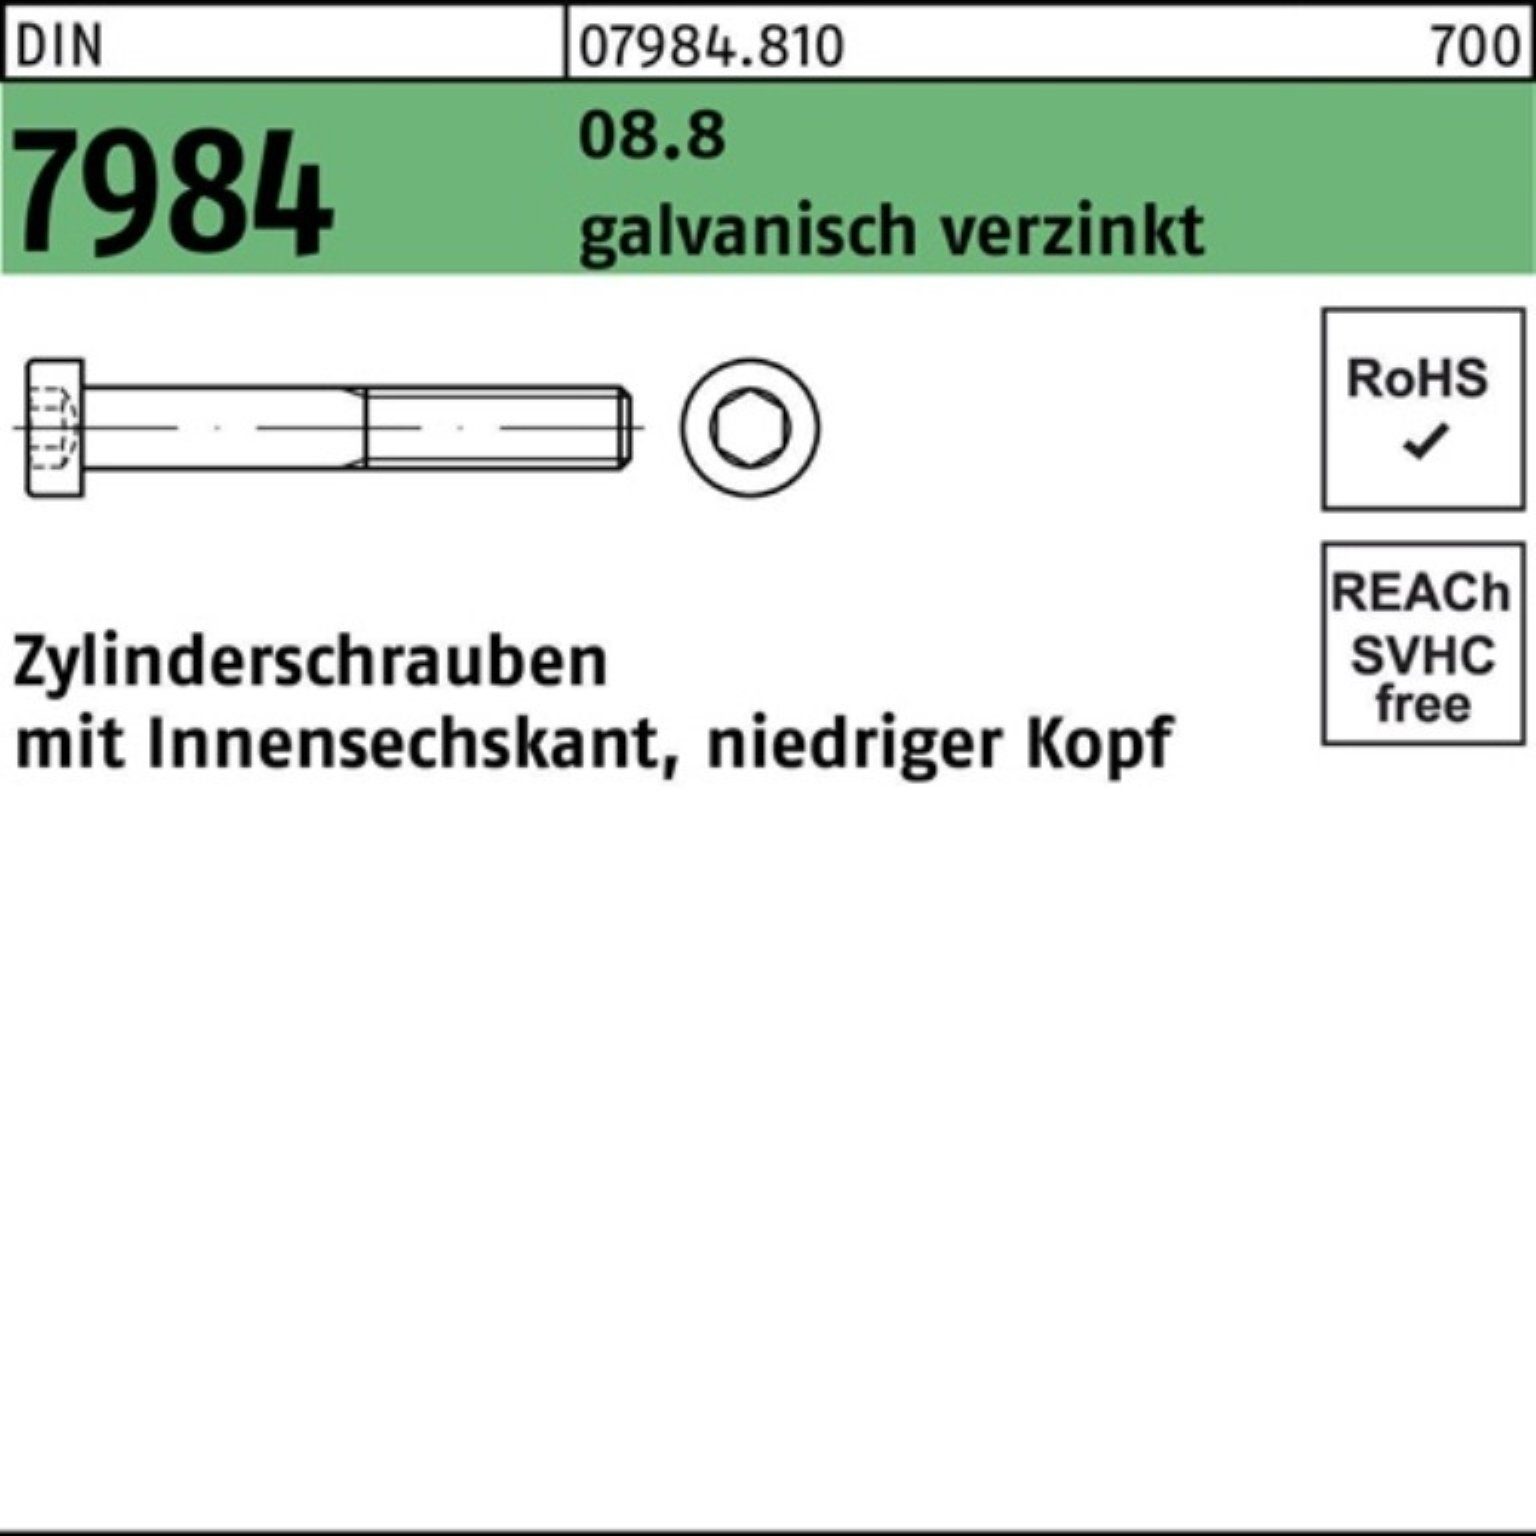 Reyher Zylinderschraube 100er Pack Innen-6kt DIN galv.verz. M10x80 1 7984 8.8 Zylinderschraube